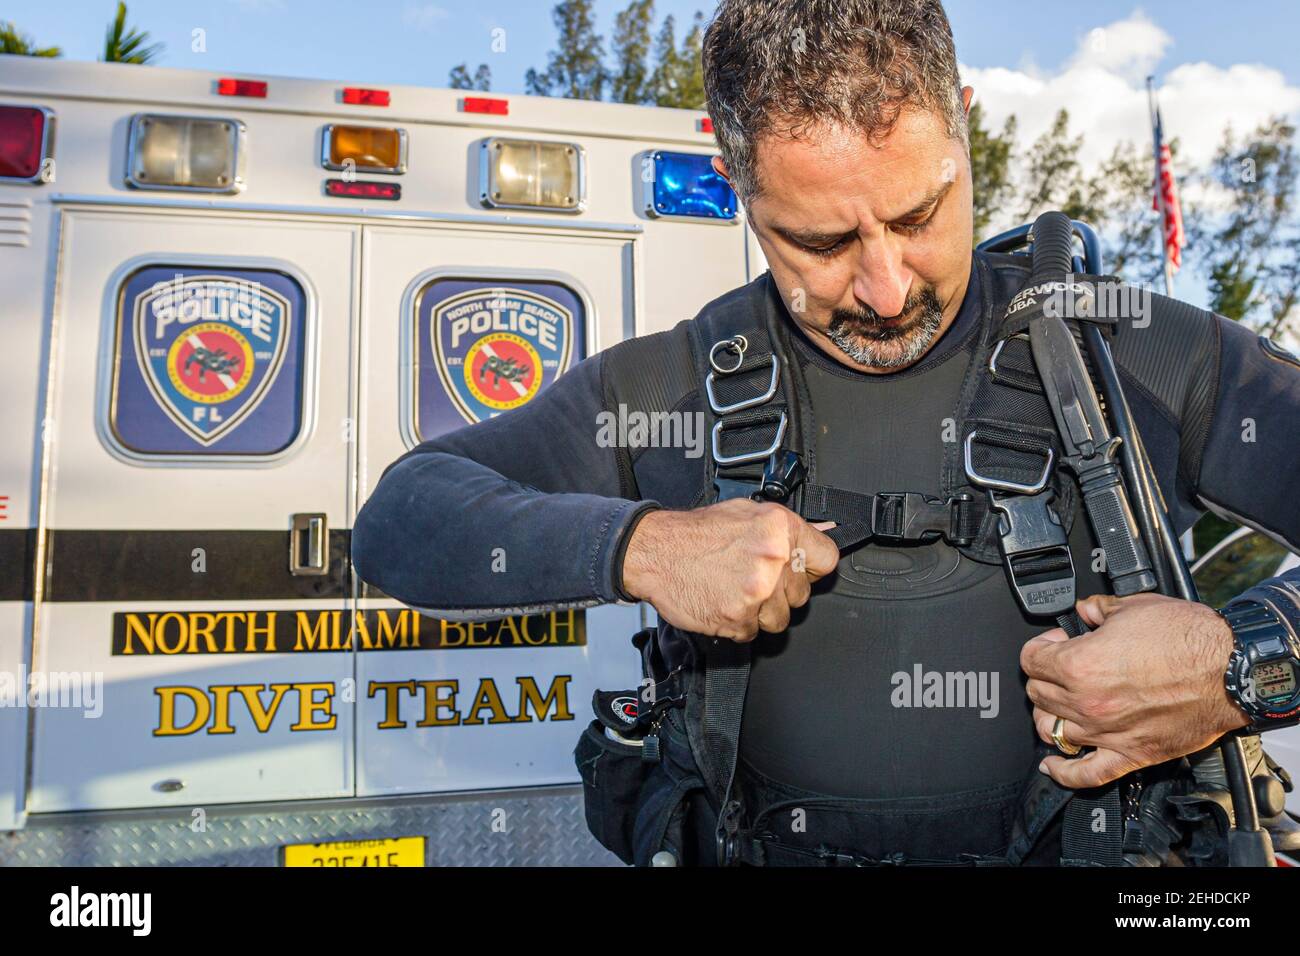 North Miami Beach Florida, service de police, membre de l'équipe de plongée, équipement de plongée, Banque D'Images